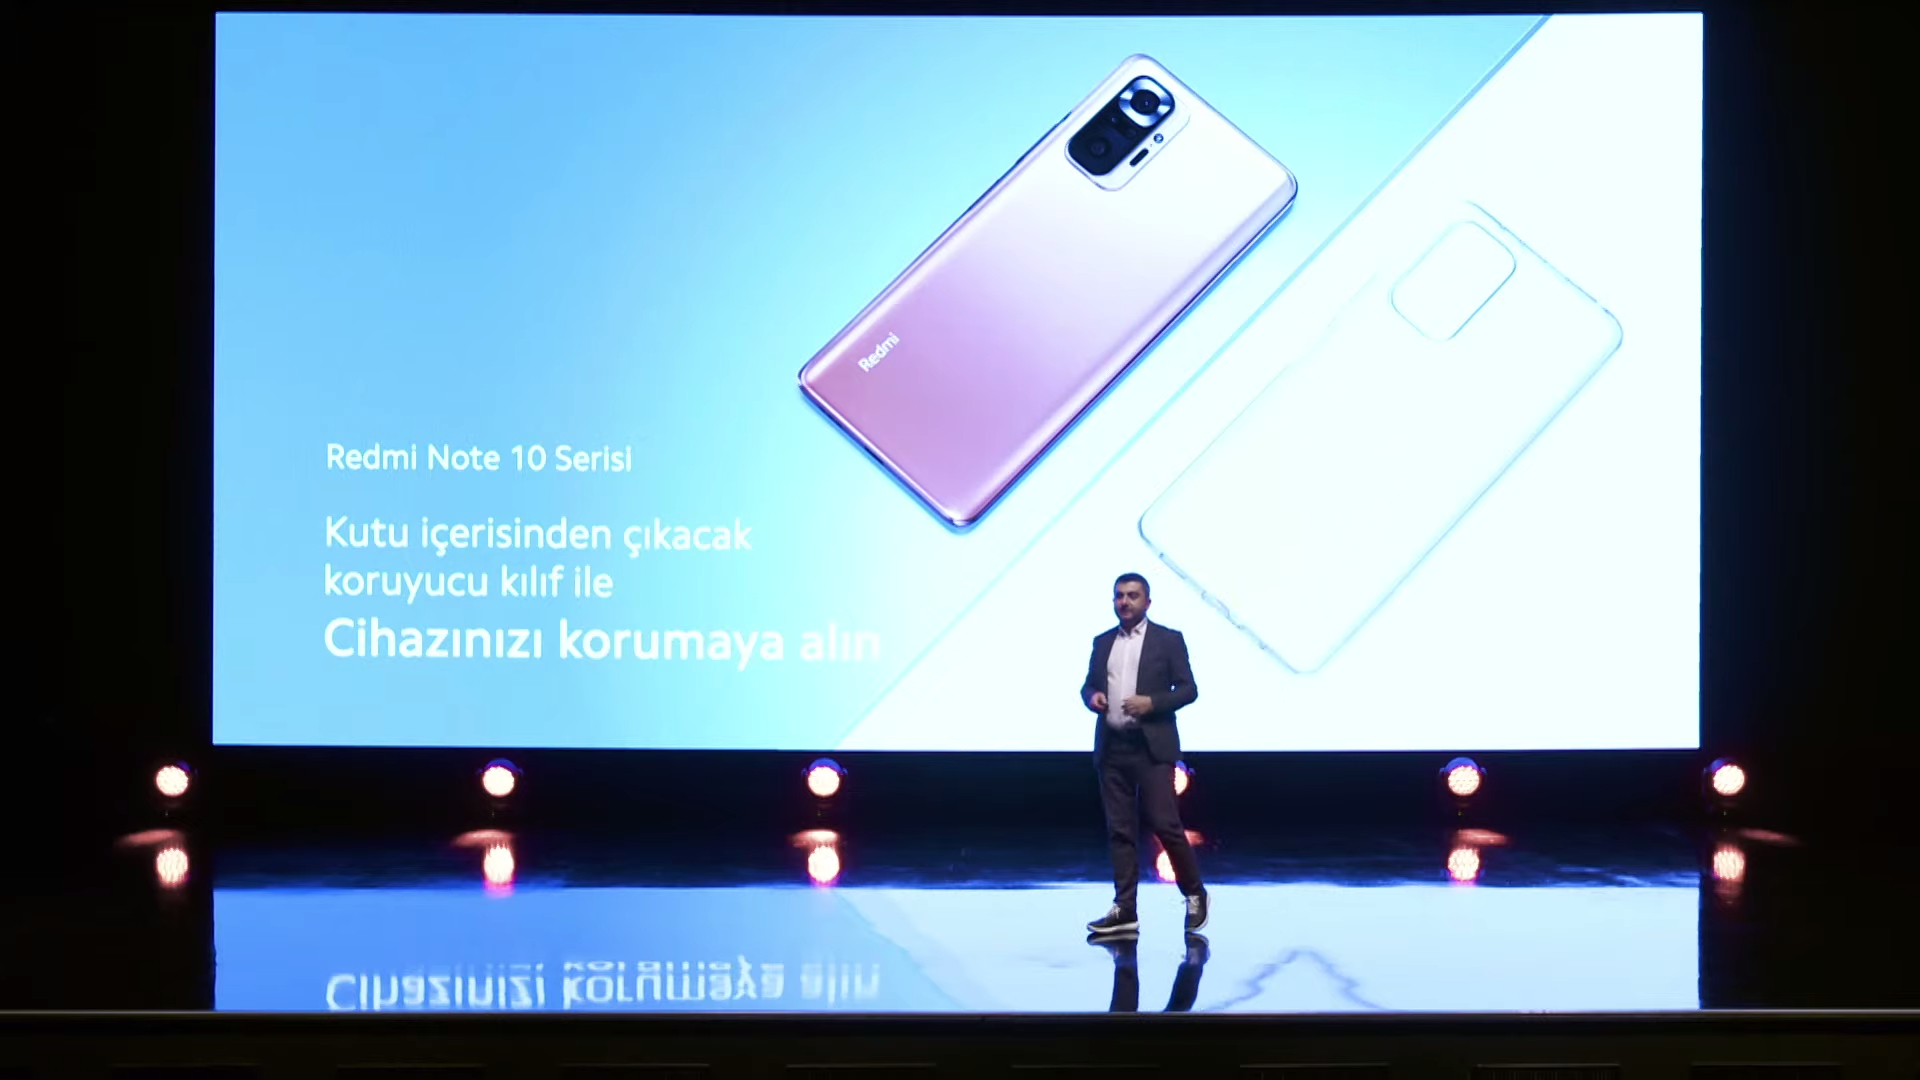 Redmi Note 10 serisi Türkiye fiyatları ve çıkış tarihi belli oldu